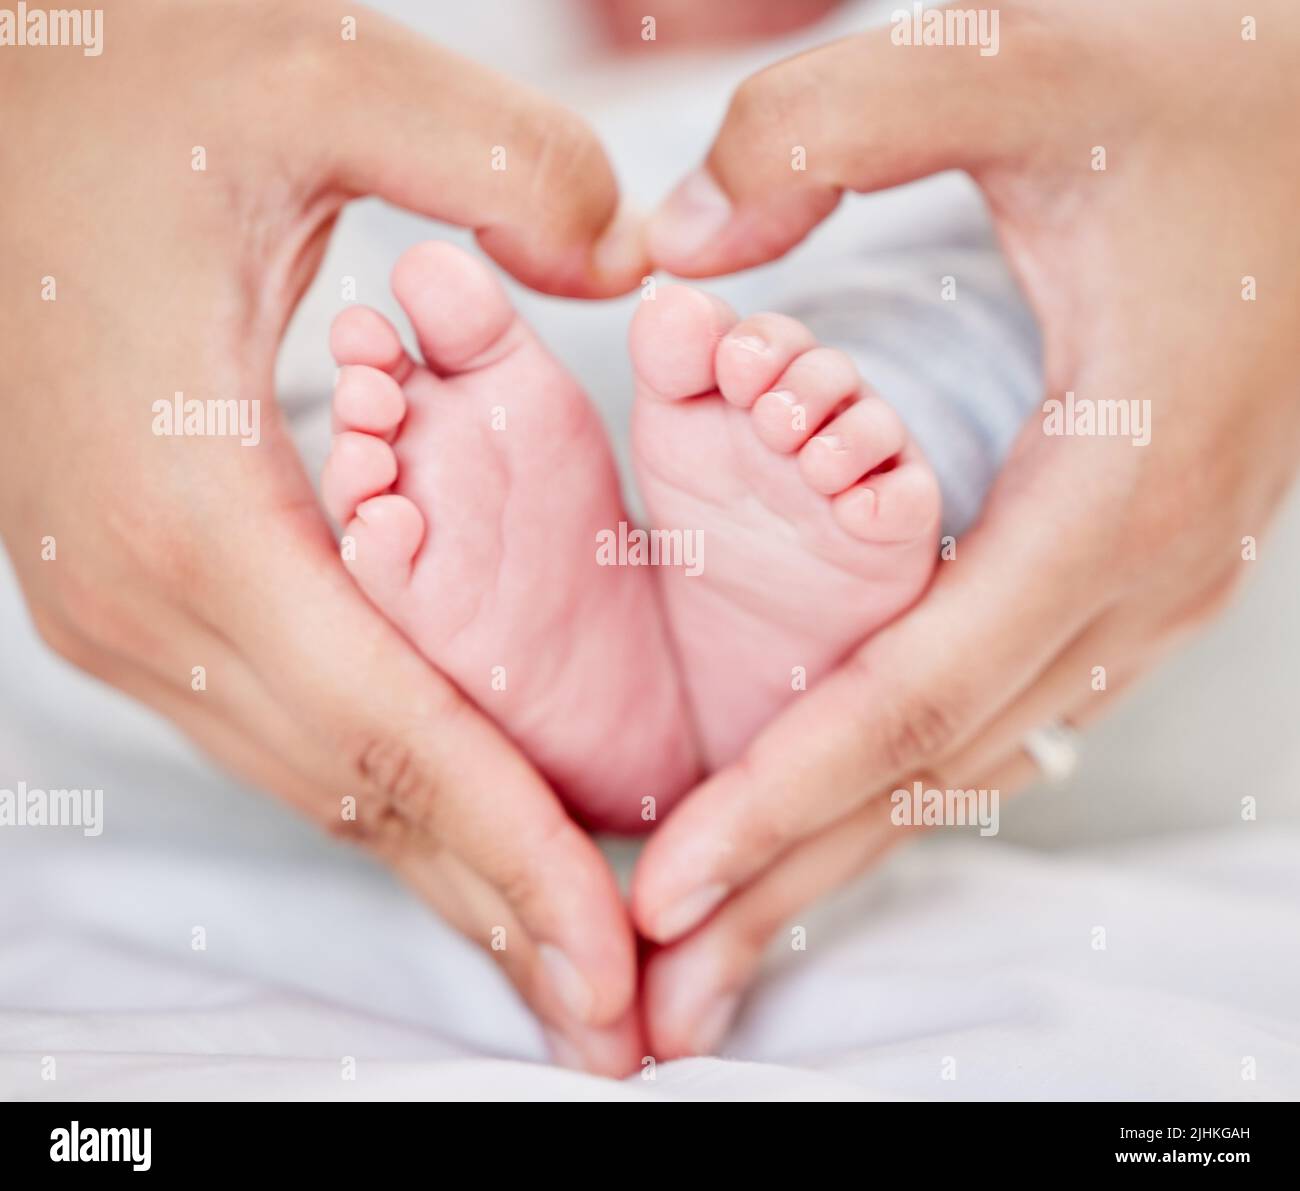 Primo piano delle mani di un genitore che forma una forma del cuore intorno ai piedi piccoli del neonato. Madre che ama il suo bambino piccolo. Piccolo bambino che riposa nella sua stanza dei bambini Foto Stock